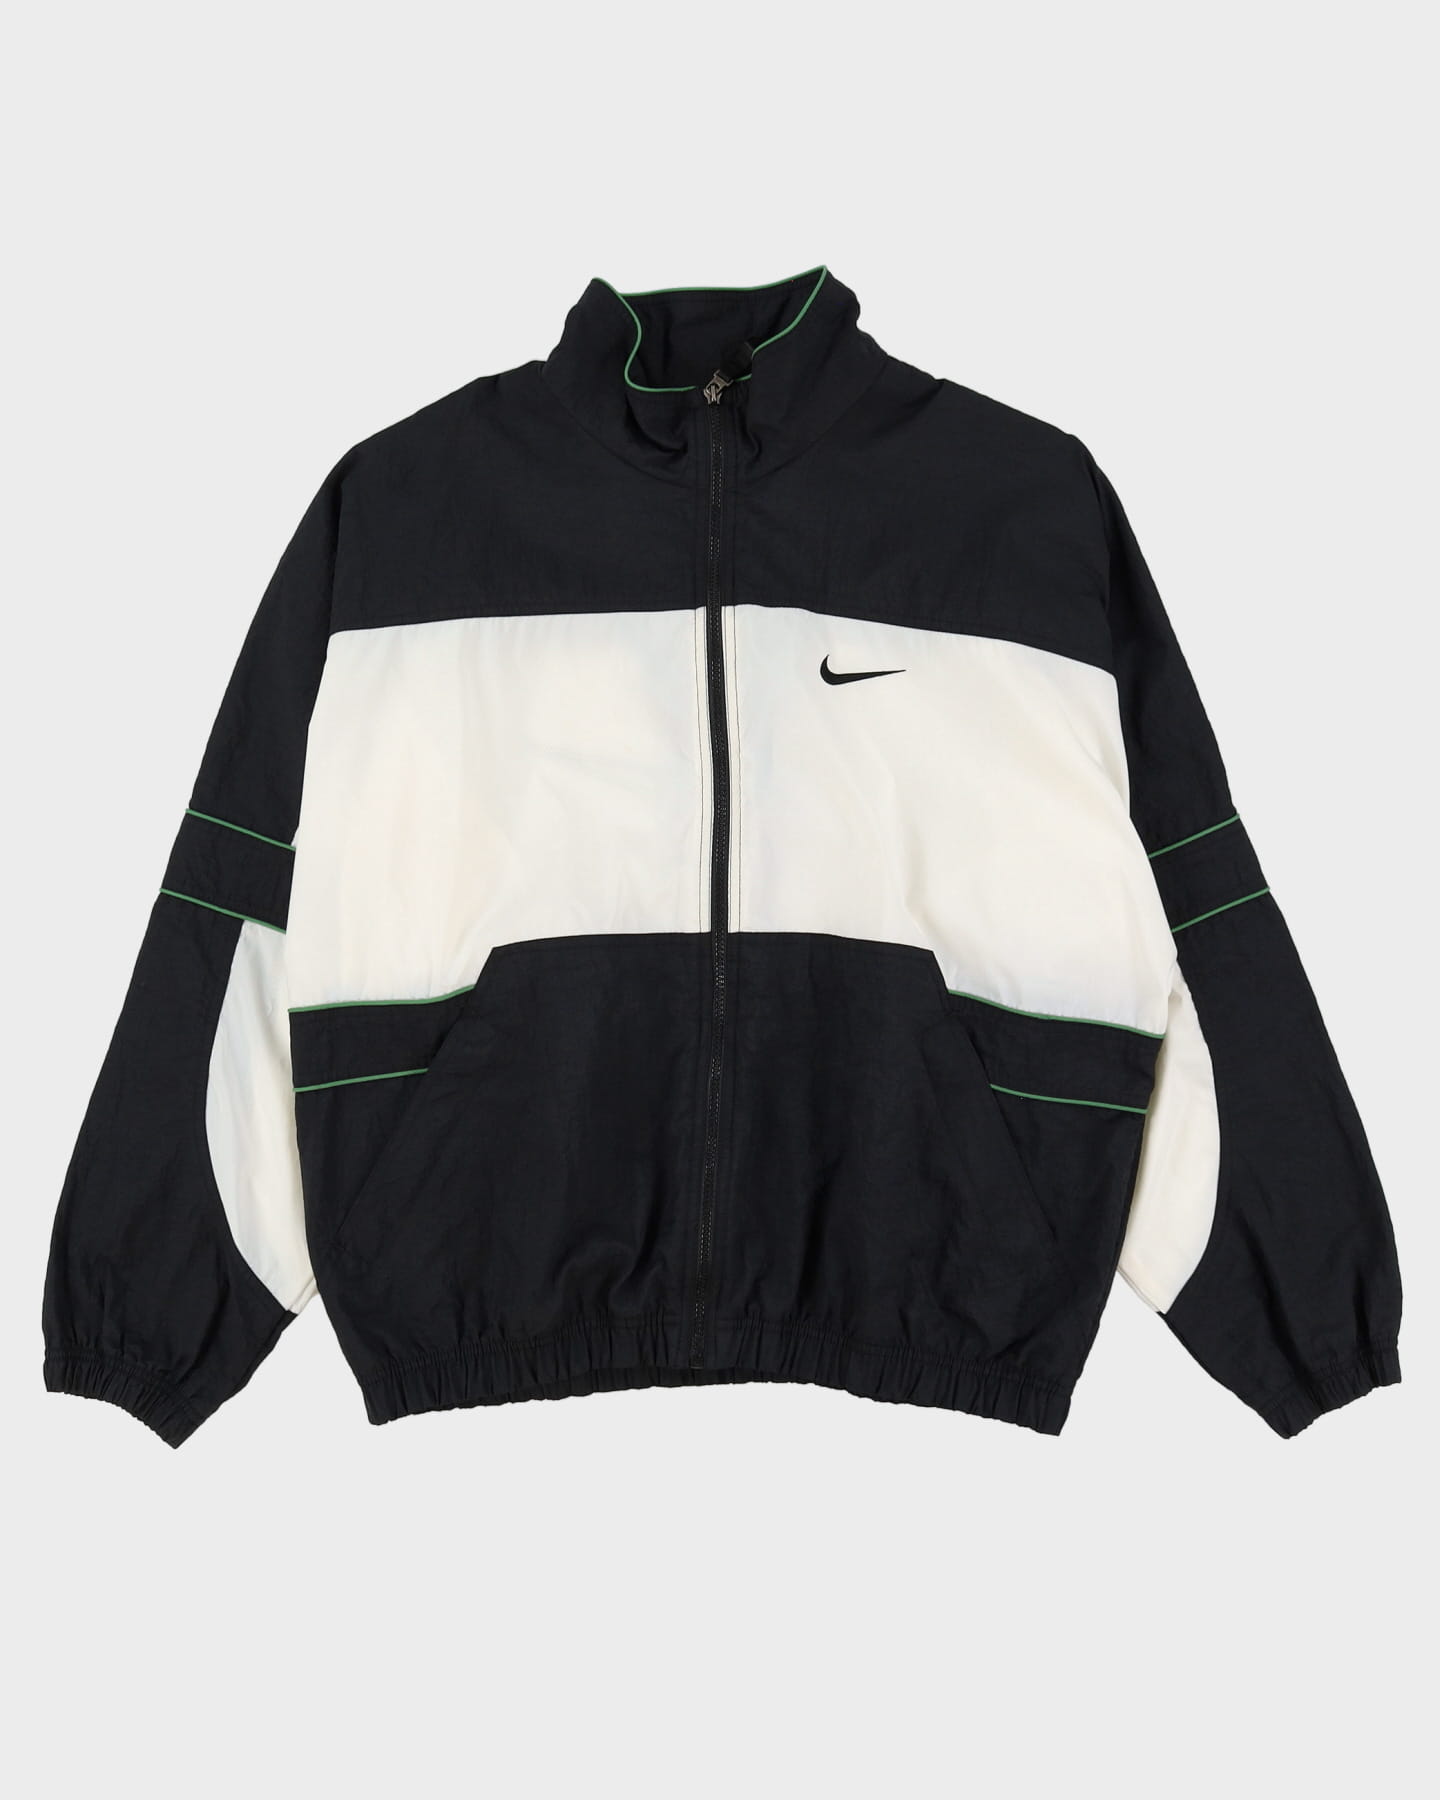 90s Nike Windbreaker Black / White Jacket - L